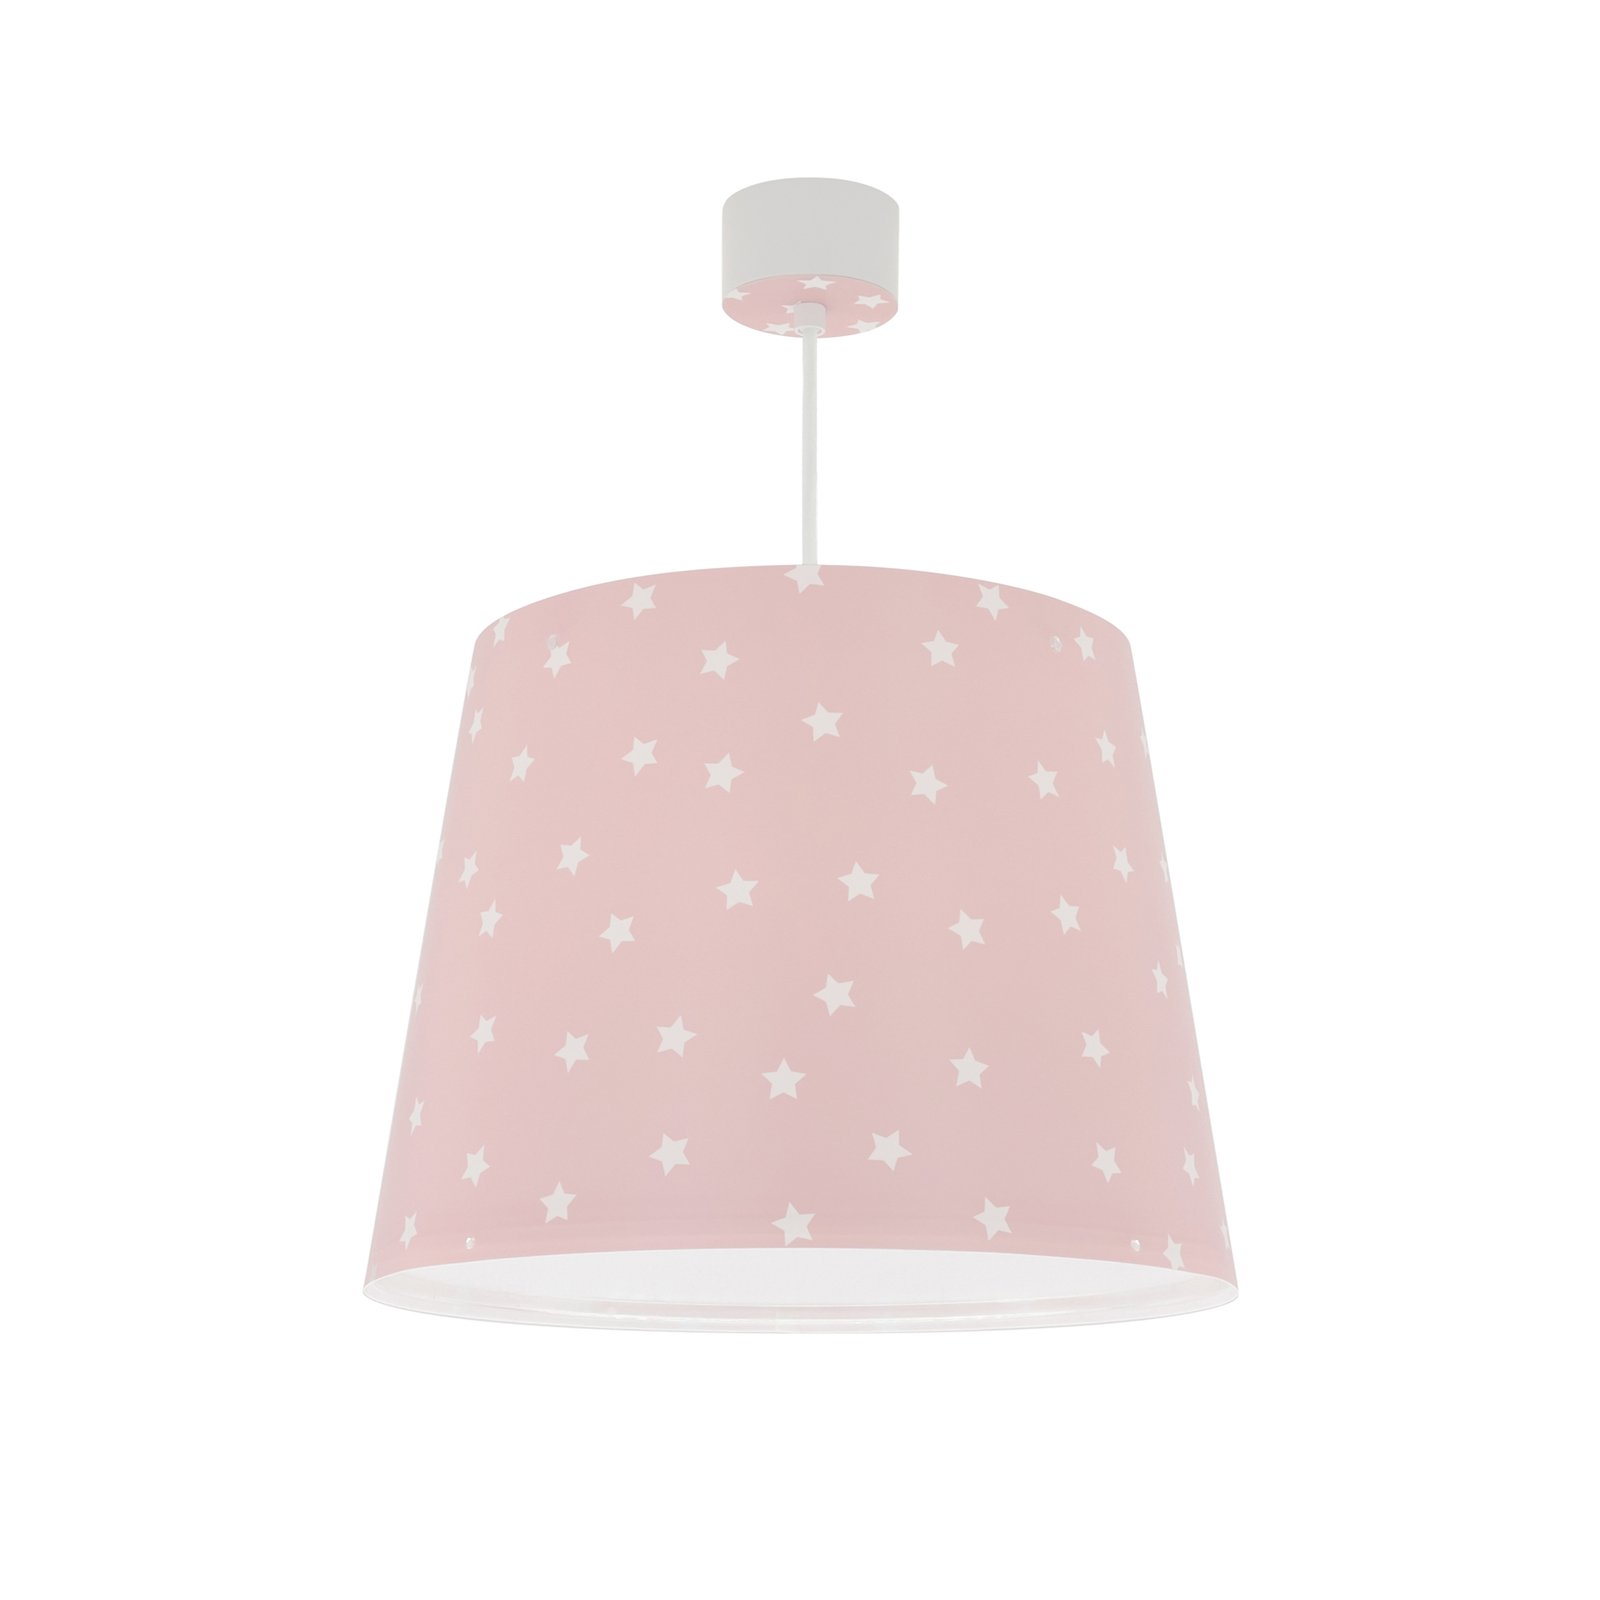 Dalber Star Light kinder hanglamp roze